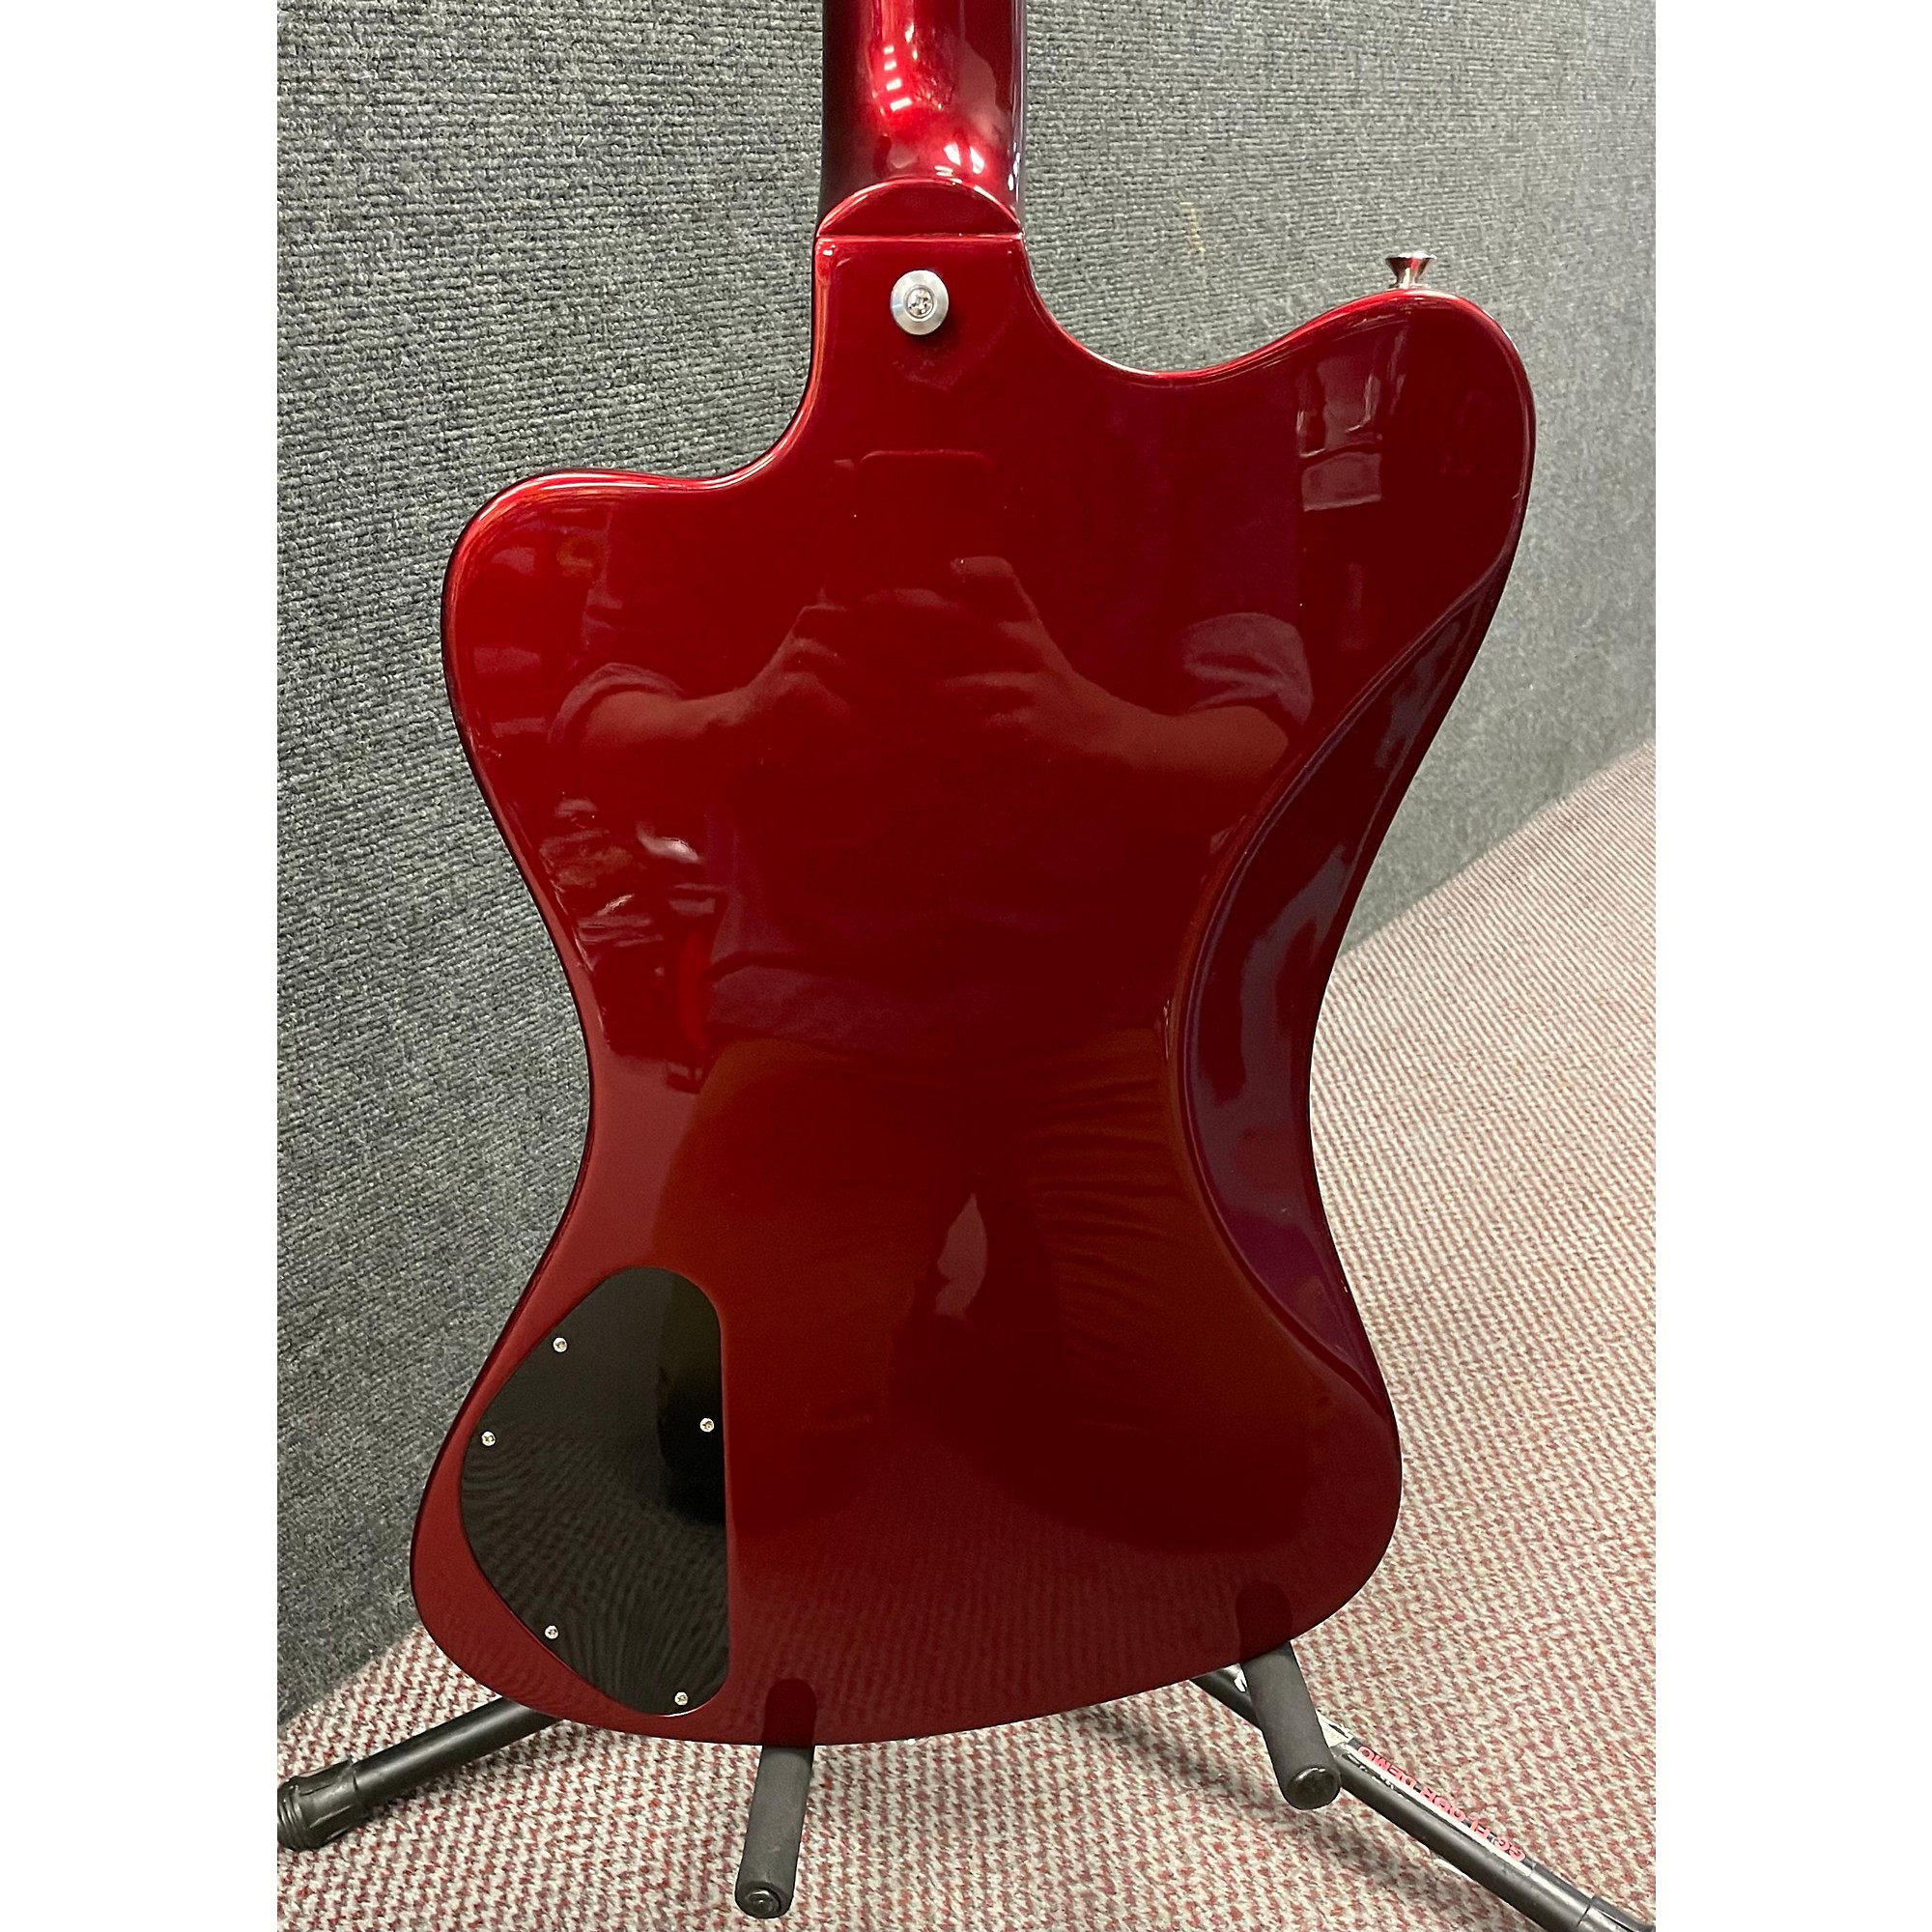 Used Gibson Thunderbird Non Reverse Electric Bass Guitar | Guitar 